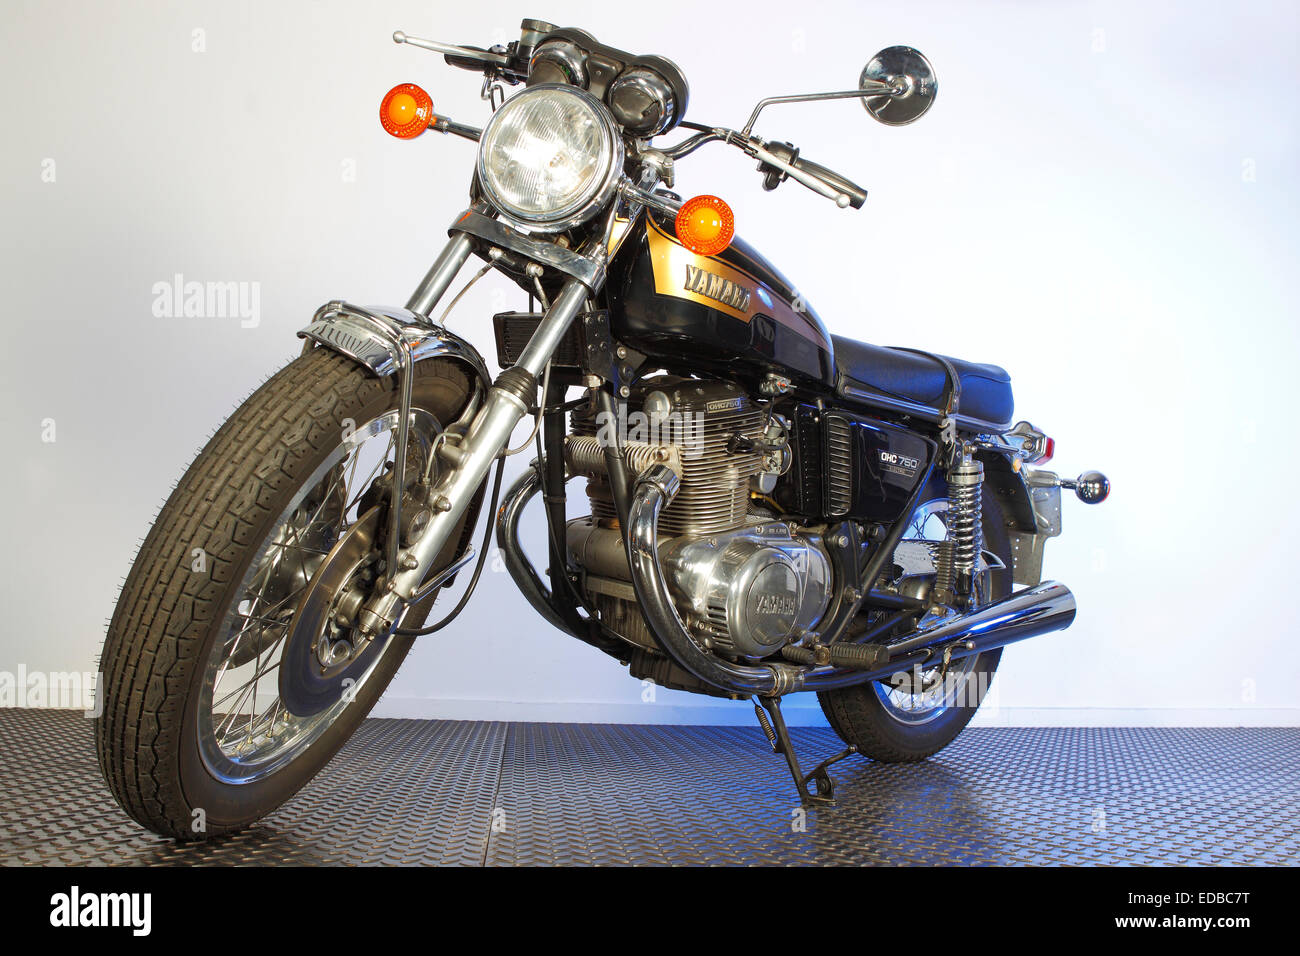 Yamaha Motorcycle OHC 750 Stock Photo